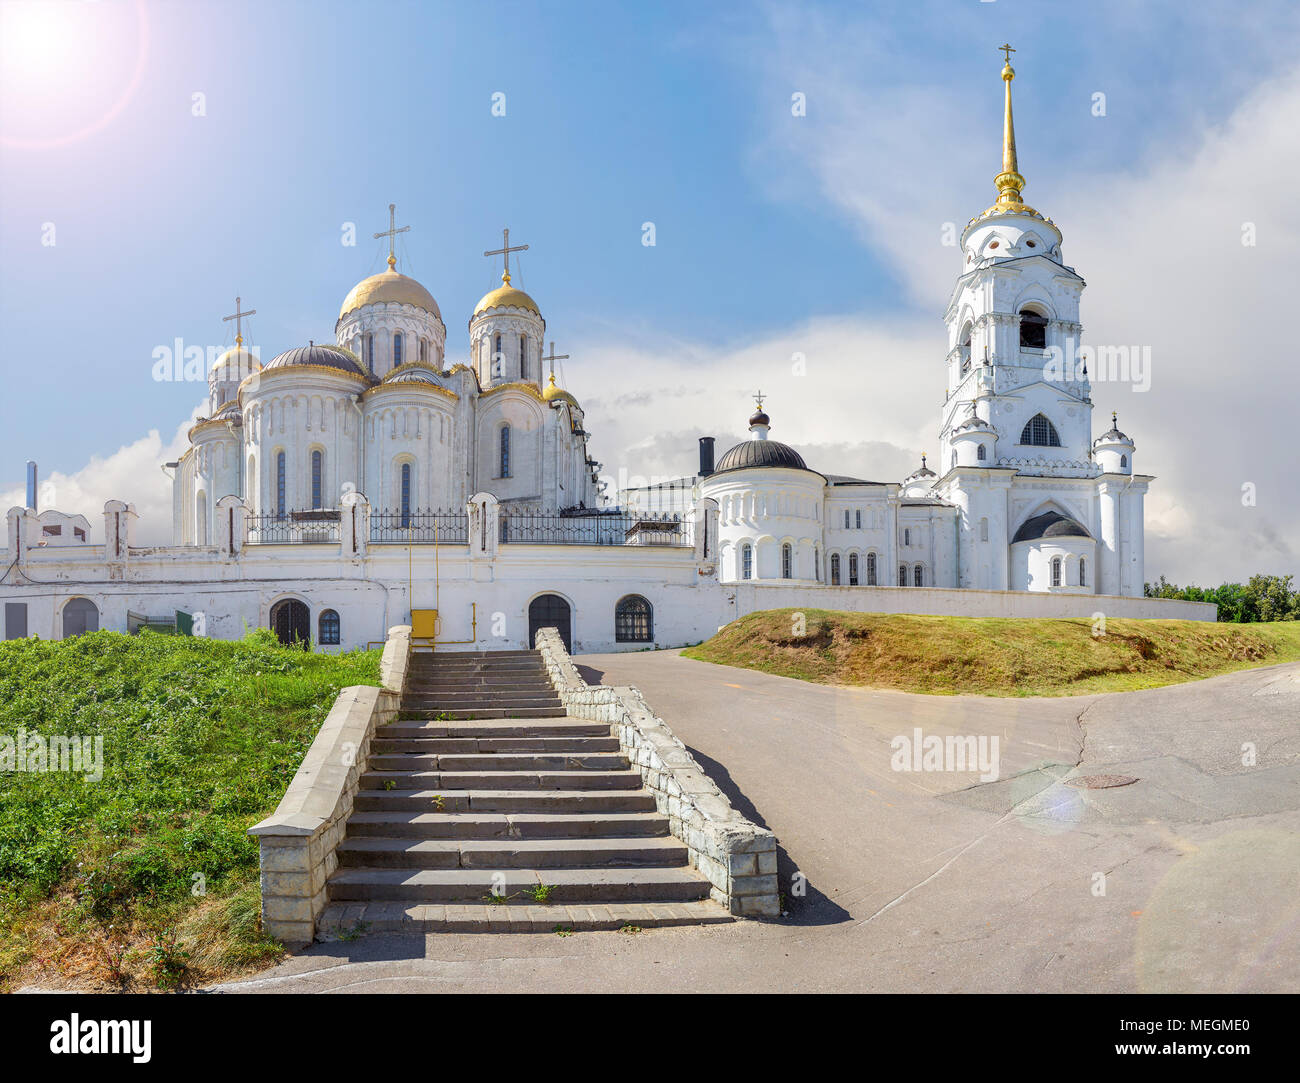 La cathédrale de la Dormition. Vladimir, Russie Banque D'Images